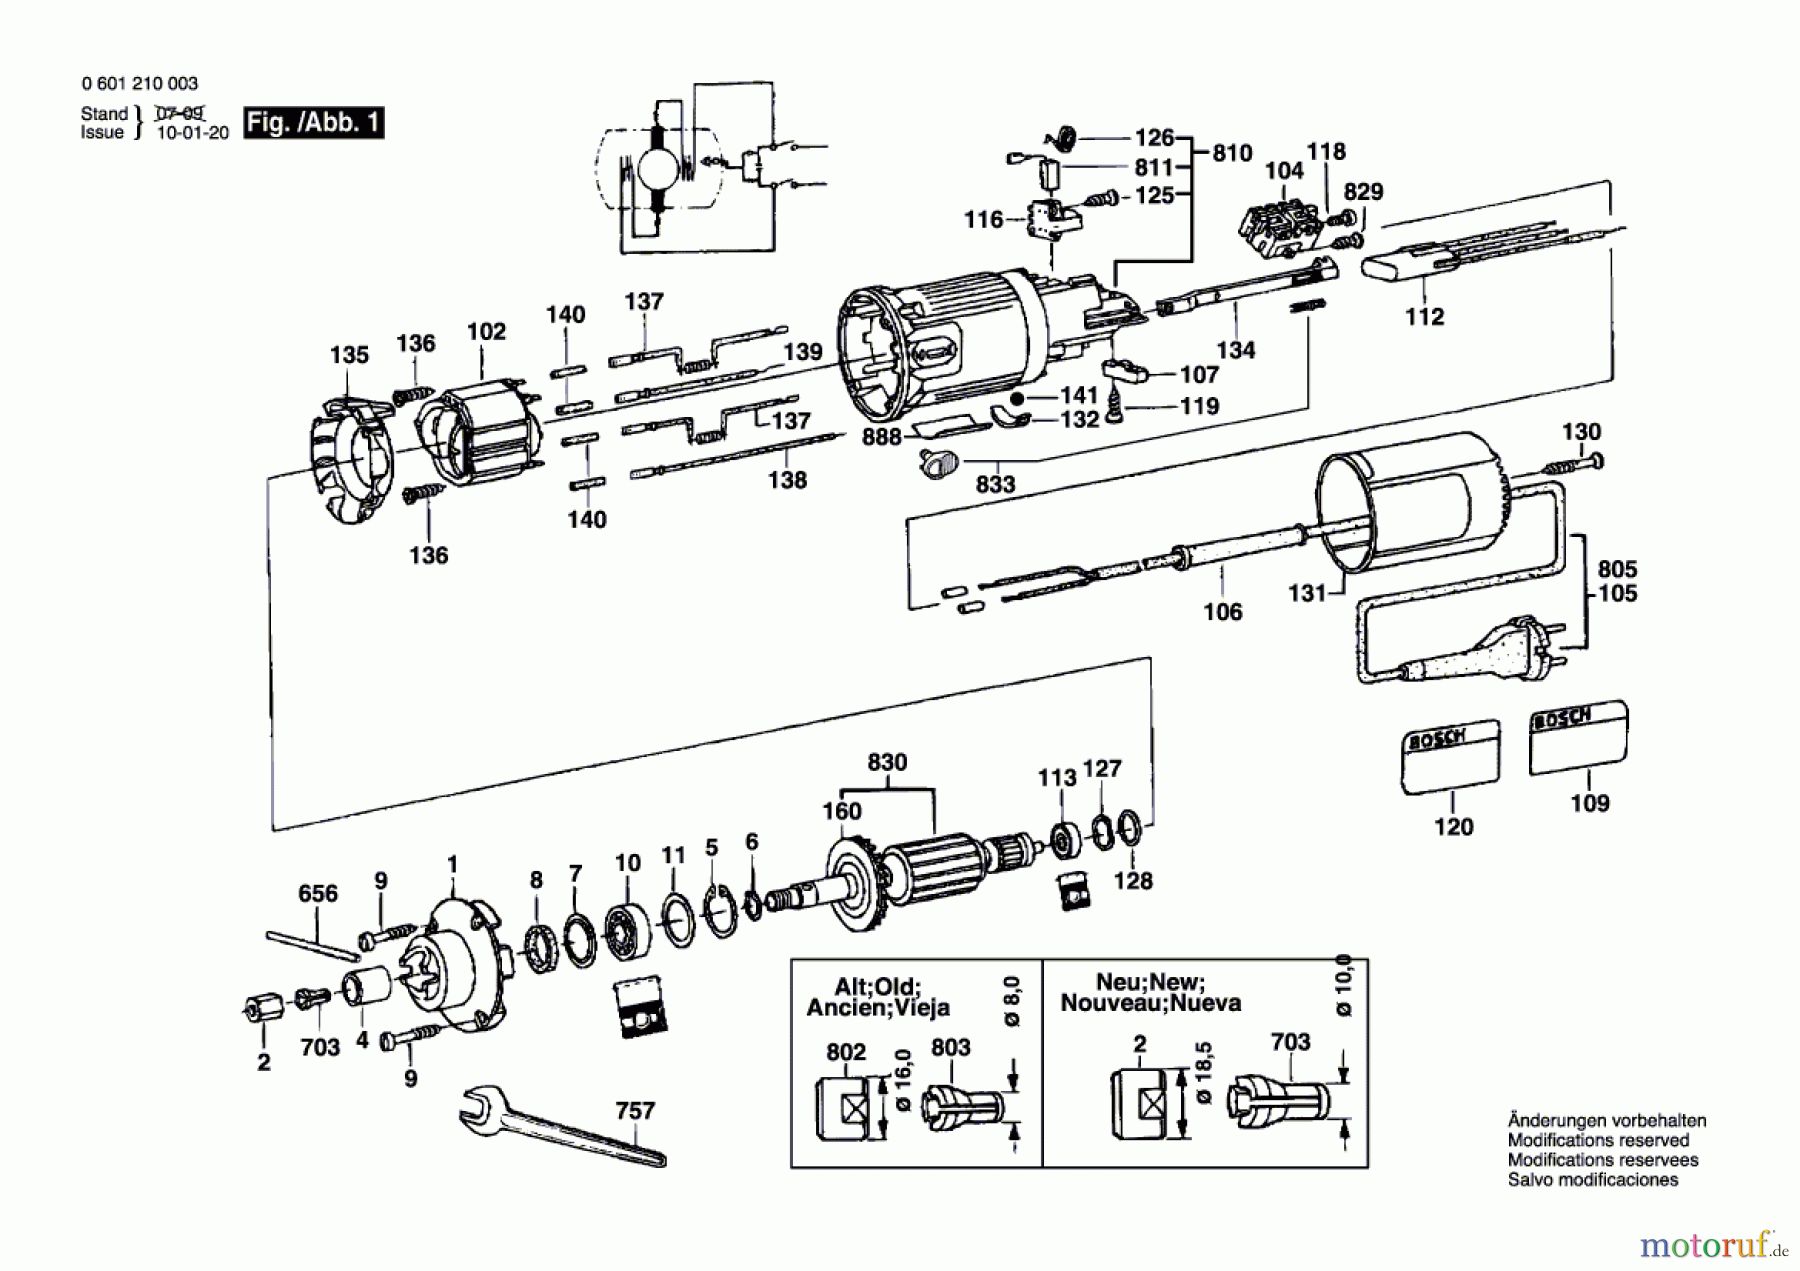  Bosch Werkzeug Geradschleifer GGS 27 Seite 1